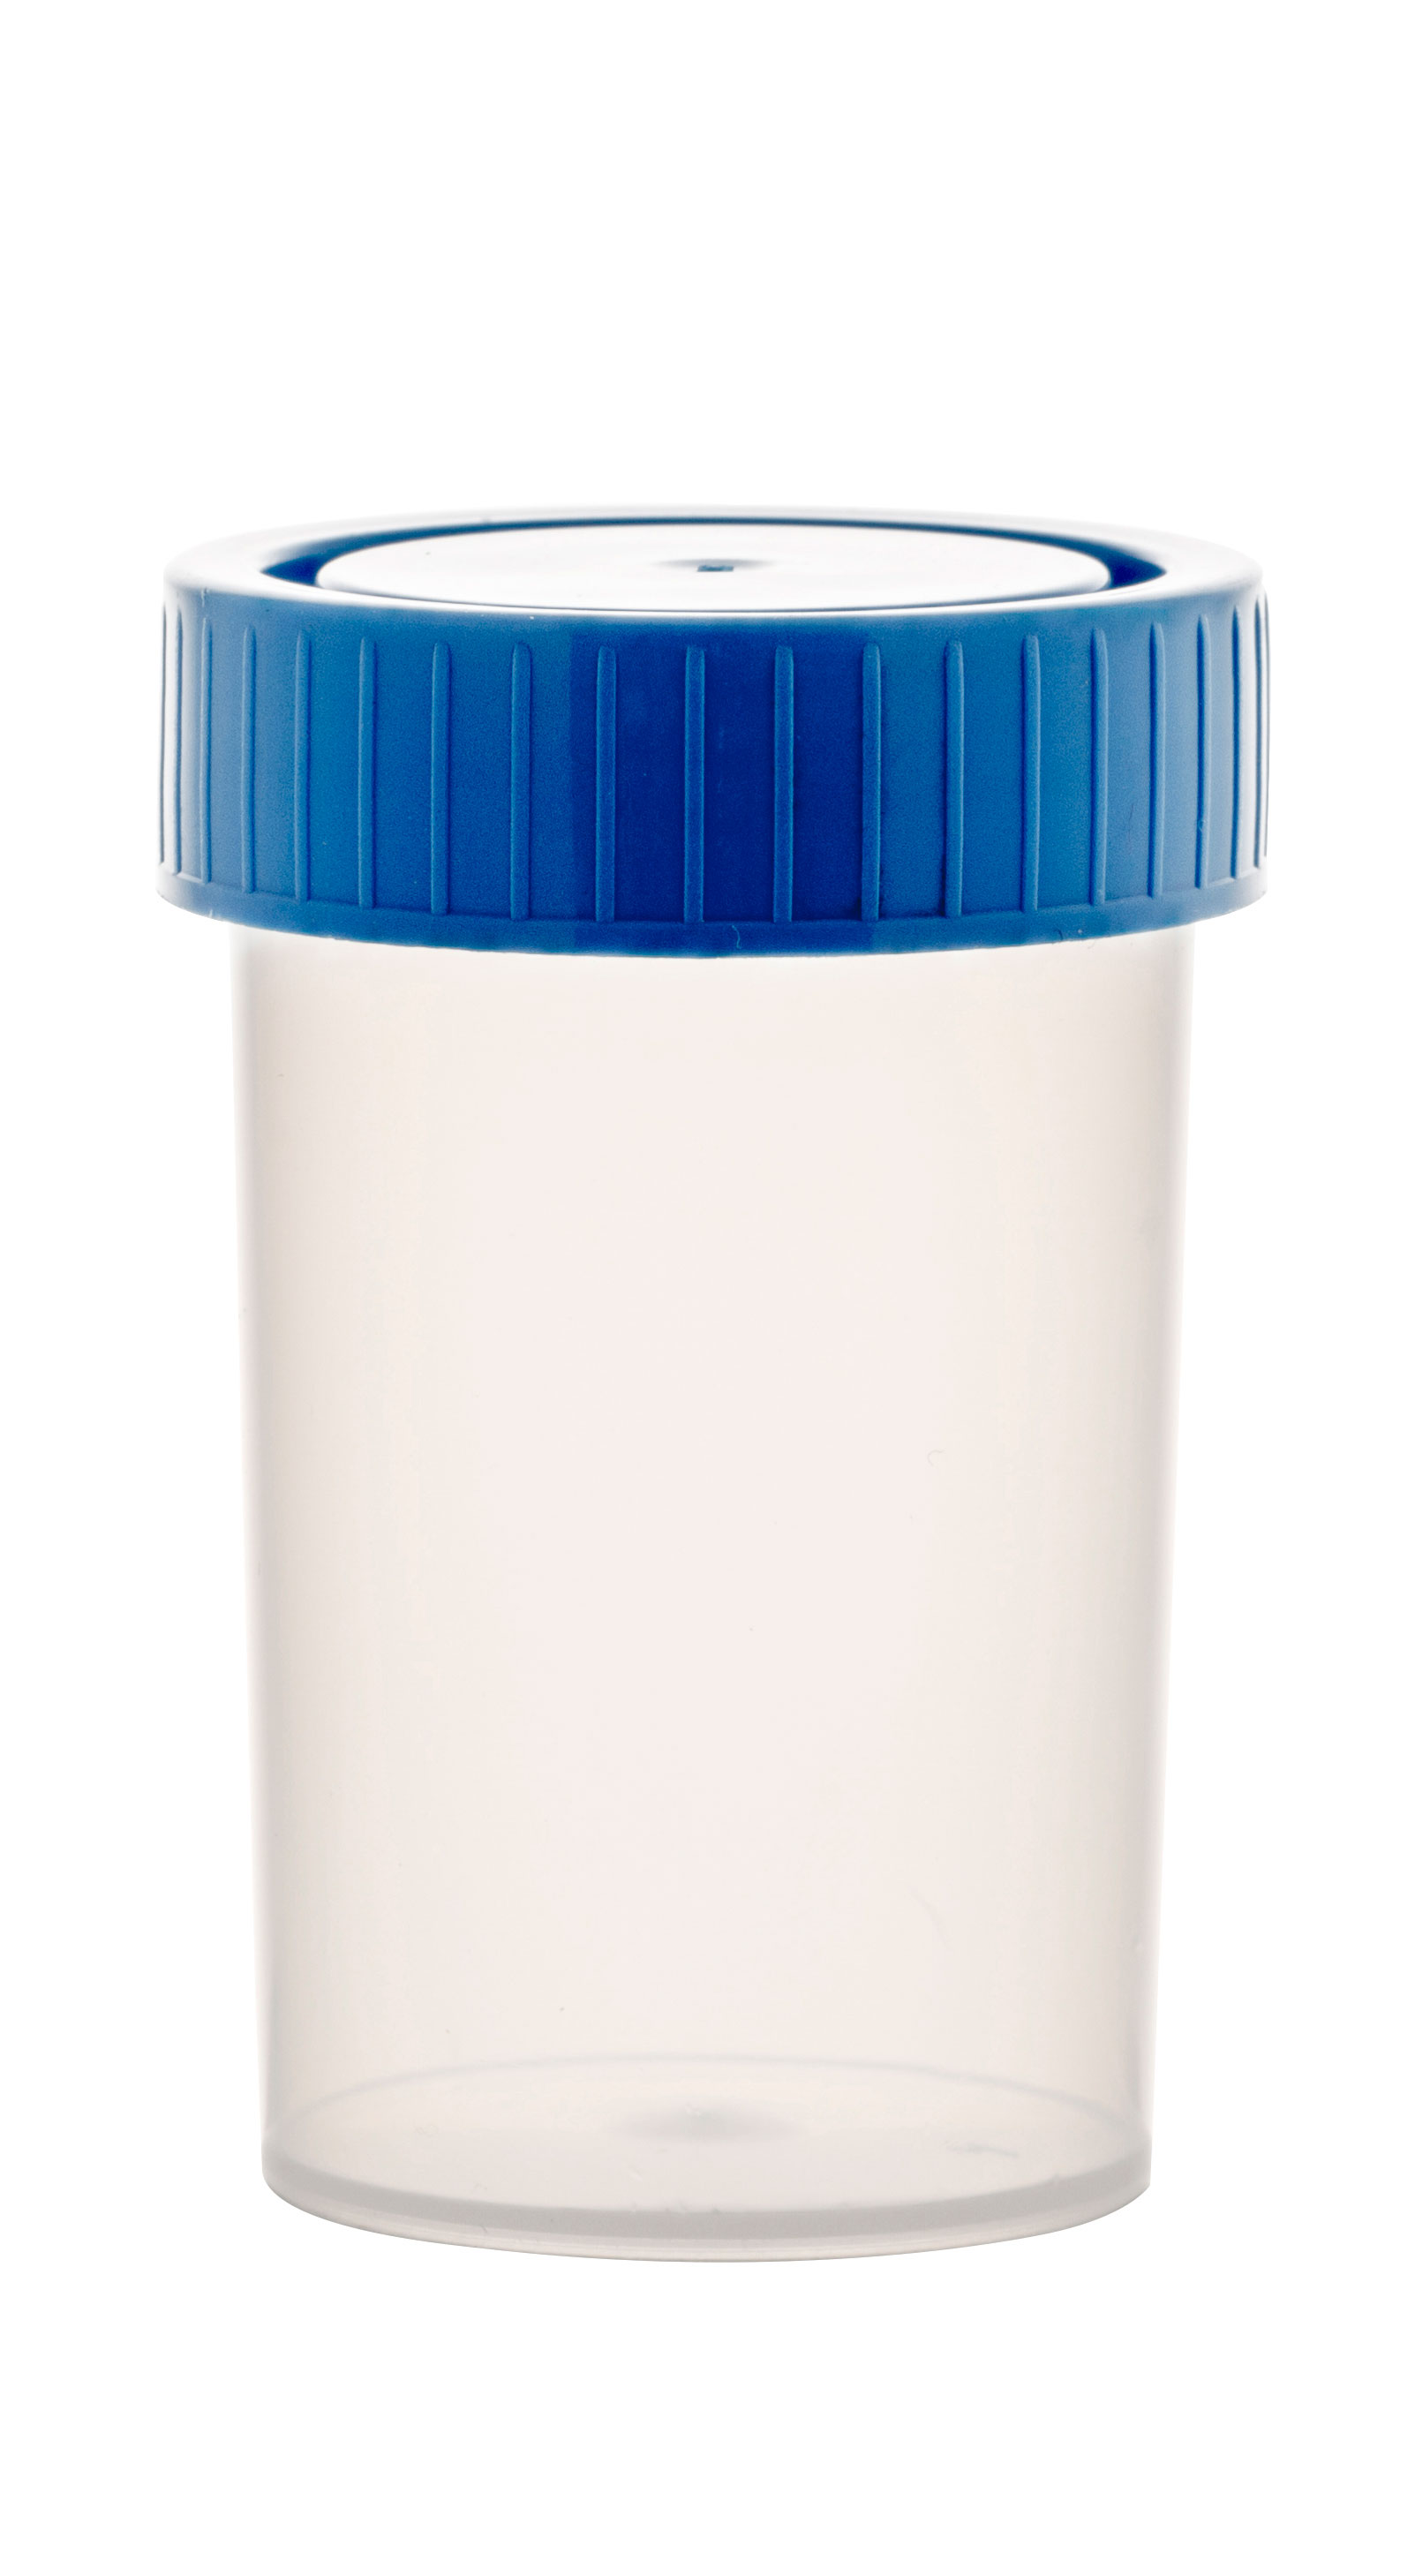 Specimen container with screw cap. 60 ml. Made of PP. Cap color: blue. Dim: 38 x 65 mm.